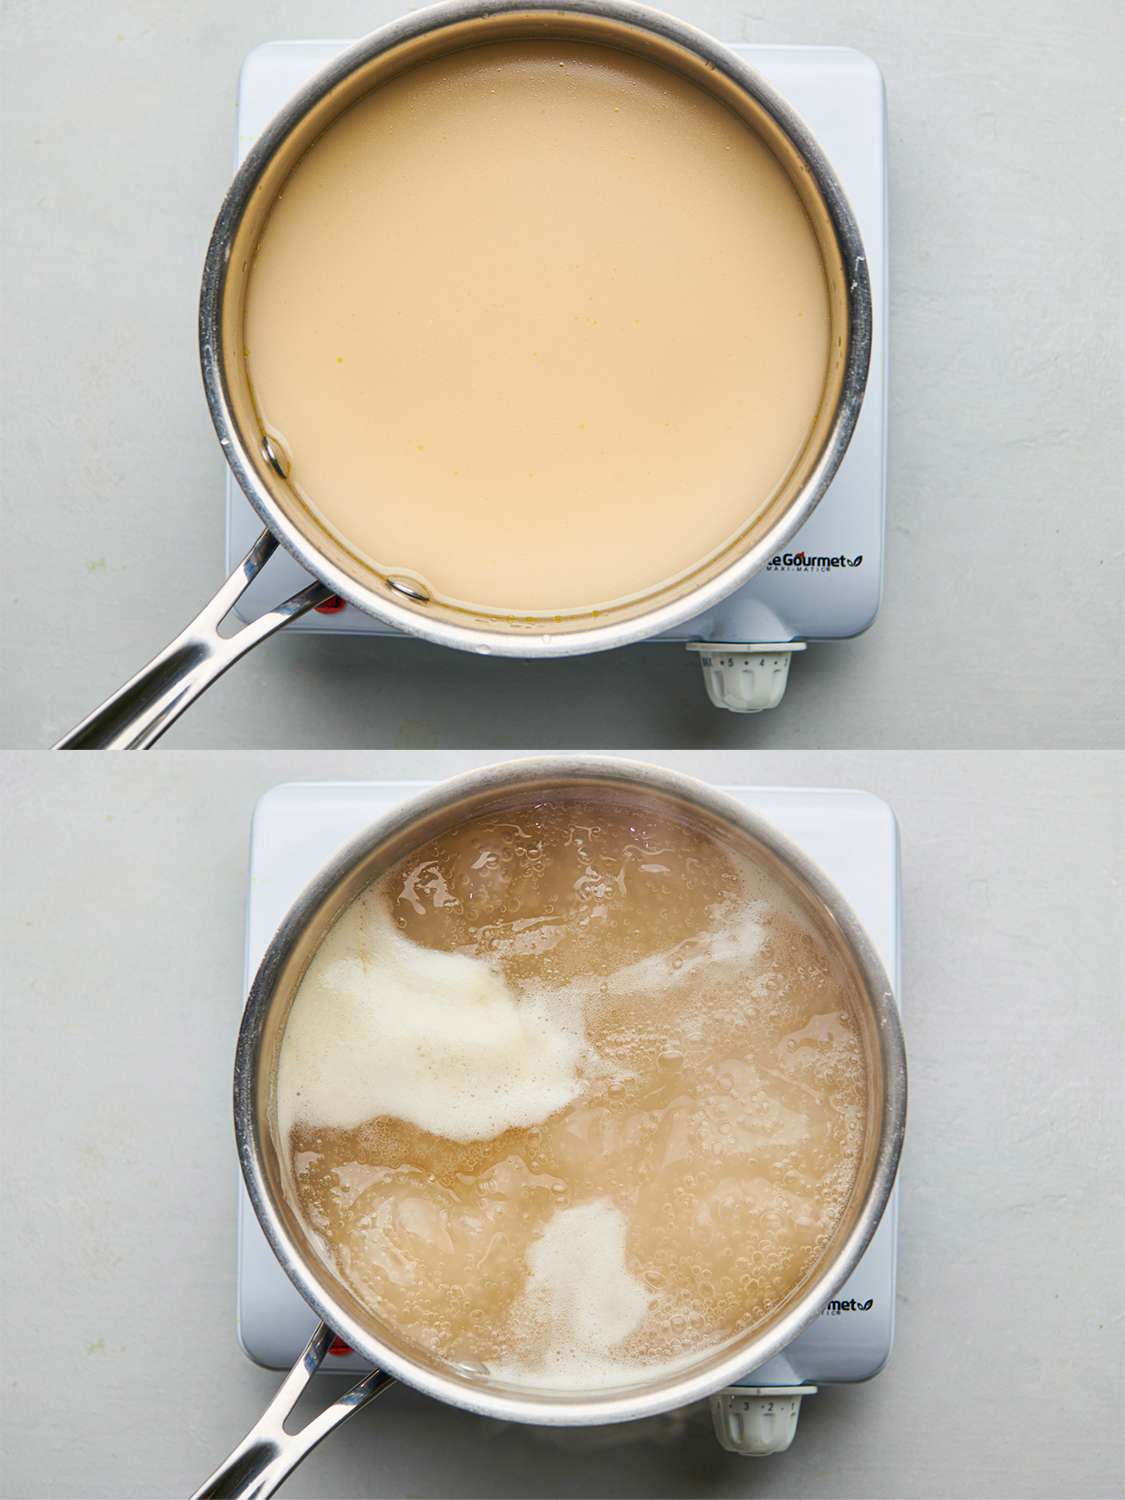 两个影像拼贴。上图显示了肉汤和玉米淀粉糊在一个平底锅中用中火相结合。下面的图片显示了汤,现在略增厚,减少到一个炖锅内。